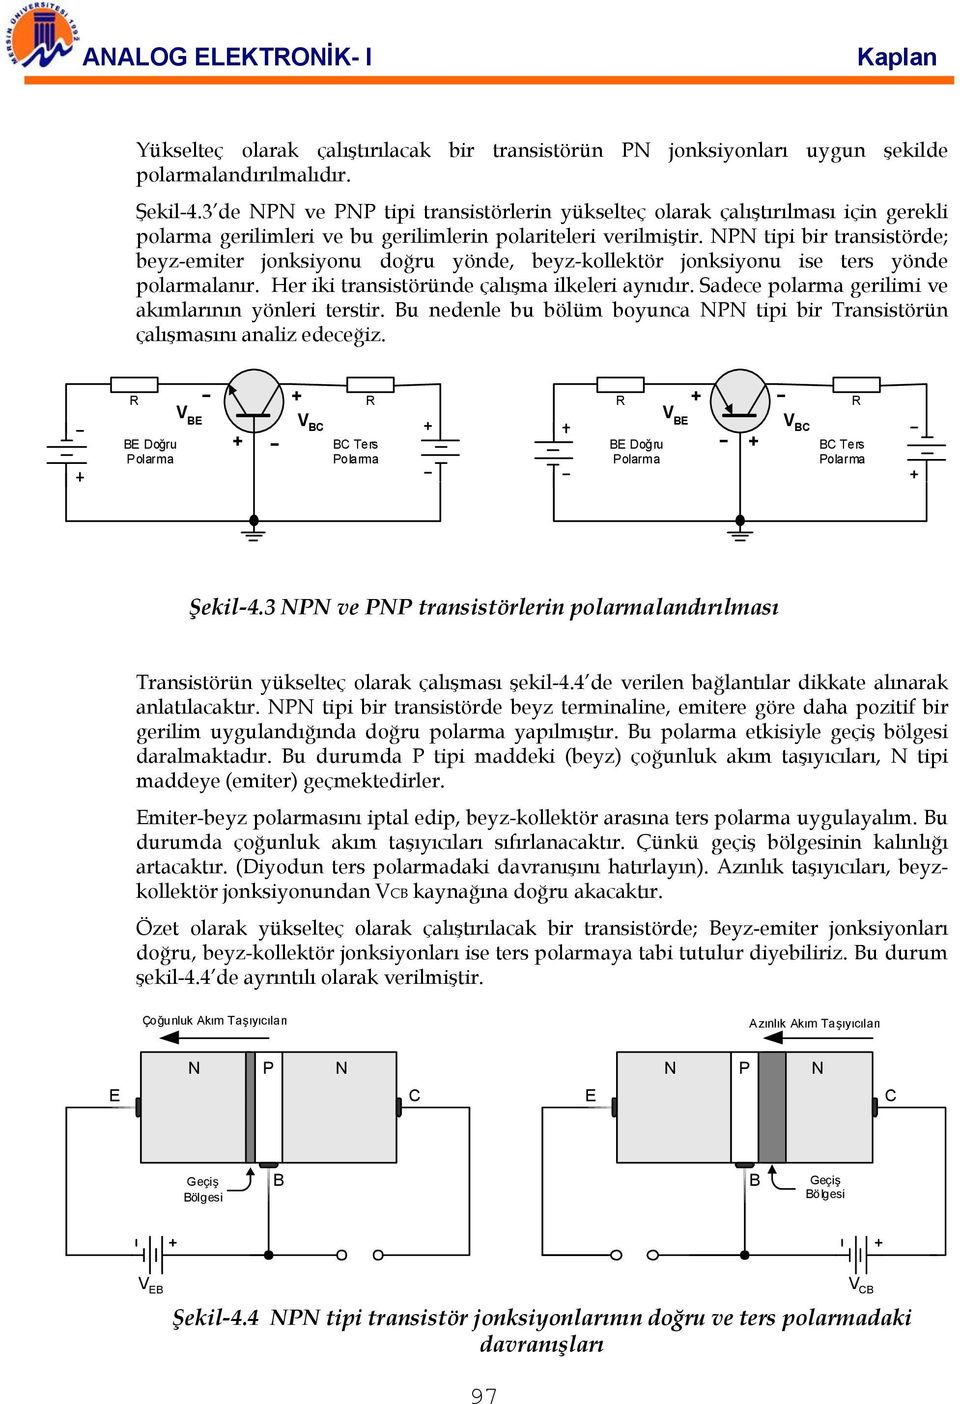 NPN tipi bir transistörde; beyz-emiter jonksiyonu doğru yönde, beyz-kollektör jonksiyonu ise ters yönde polarmalanır. Her iki transistöründe çalışma ilkeleri aynıdır.